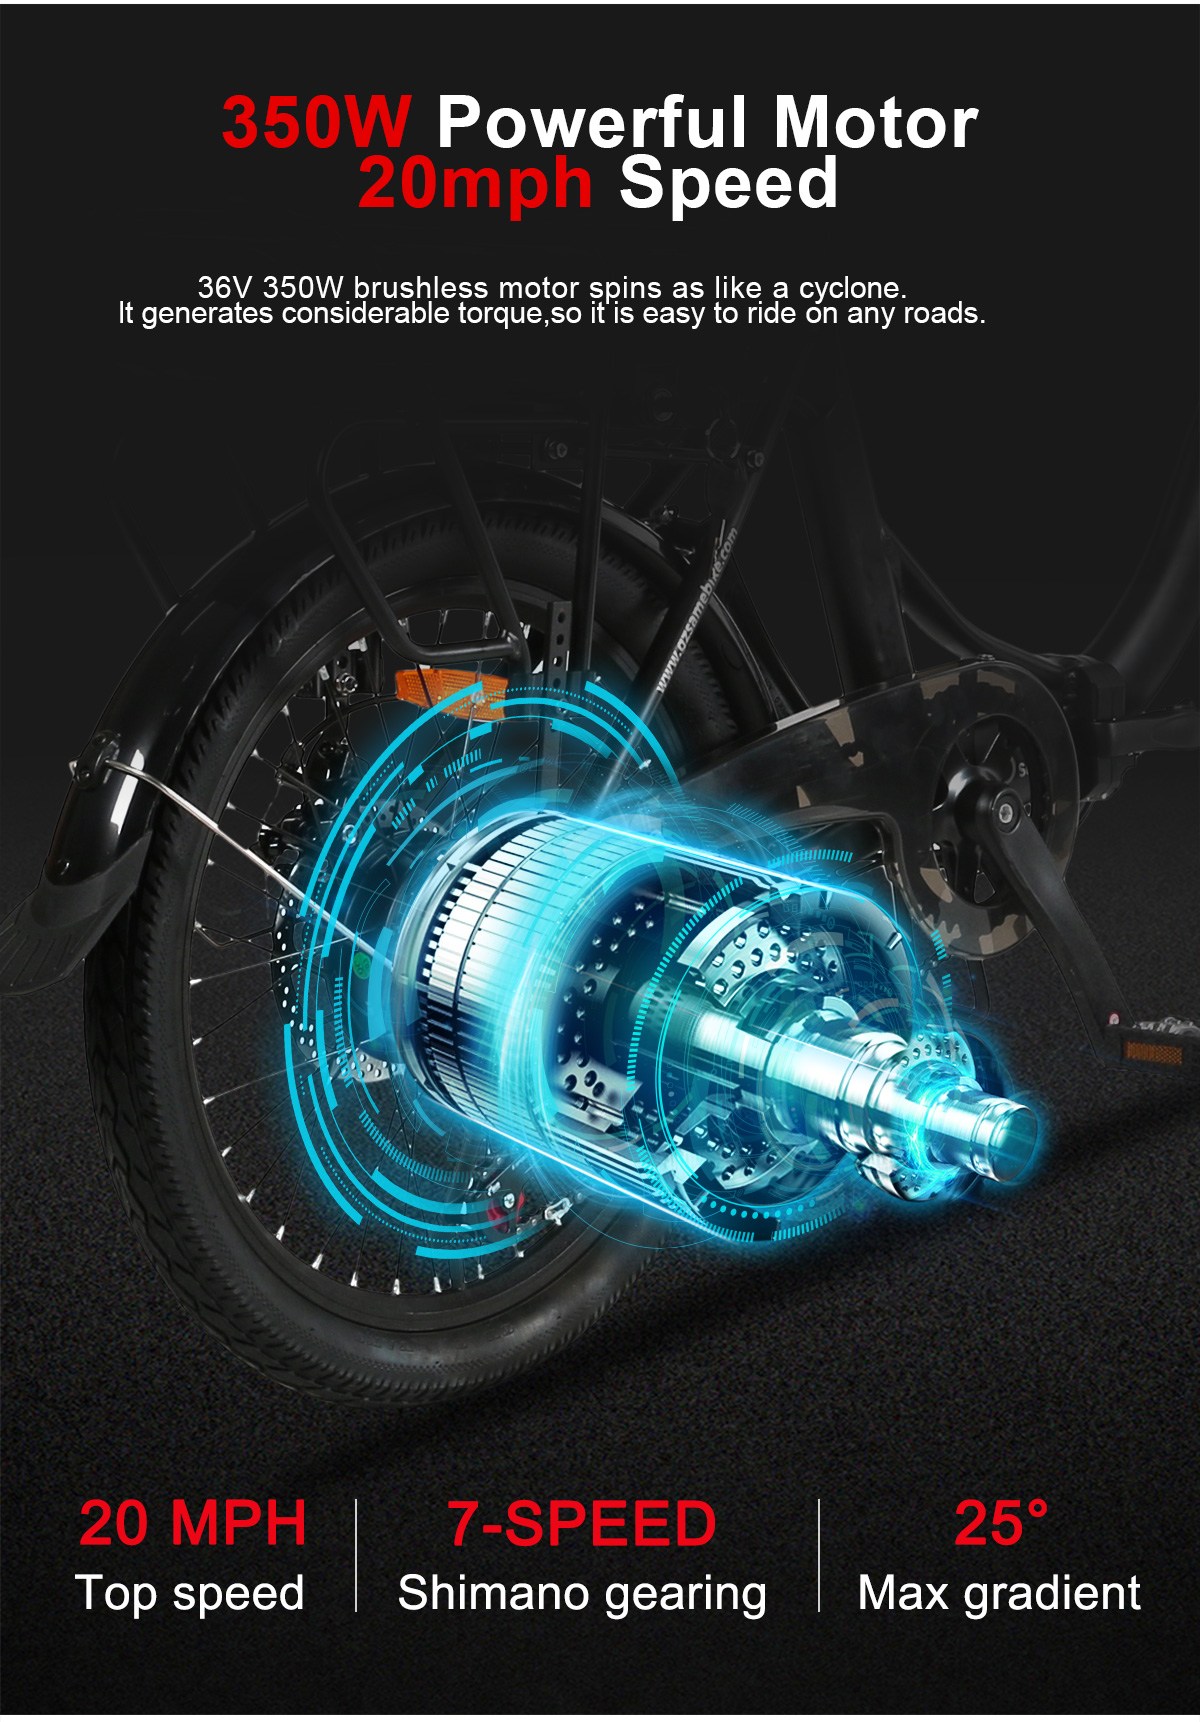 Samebike Electric Bike JG20 Foldable City eBike